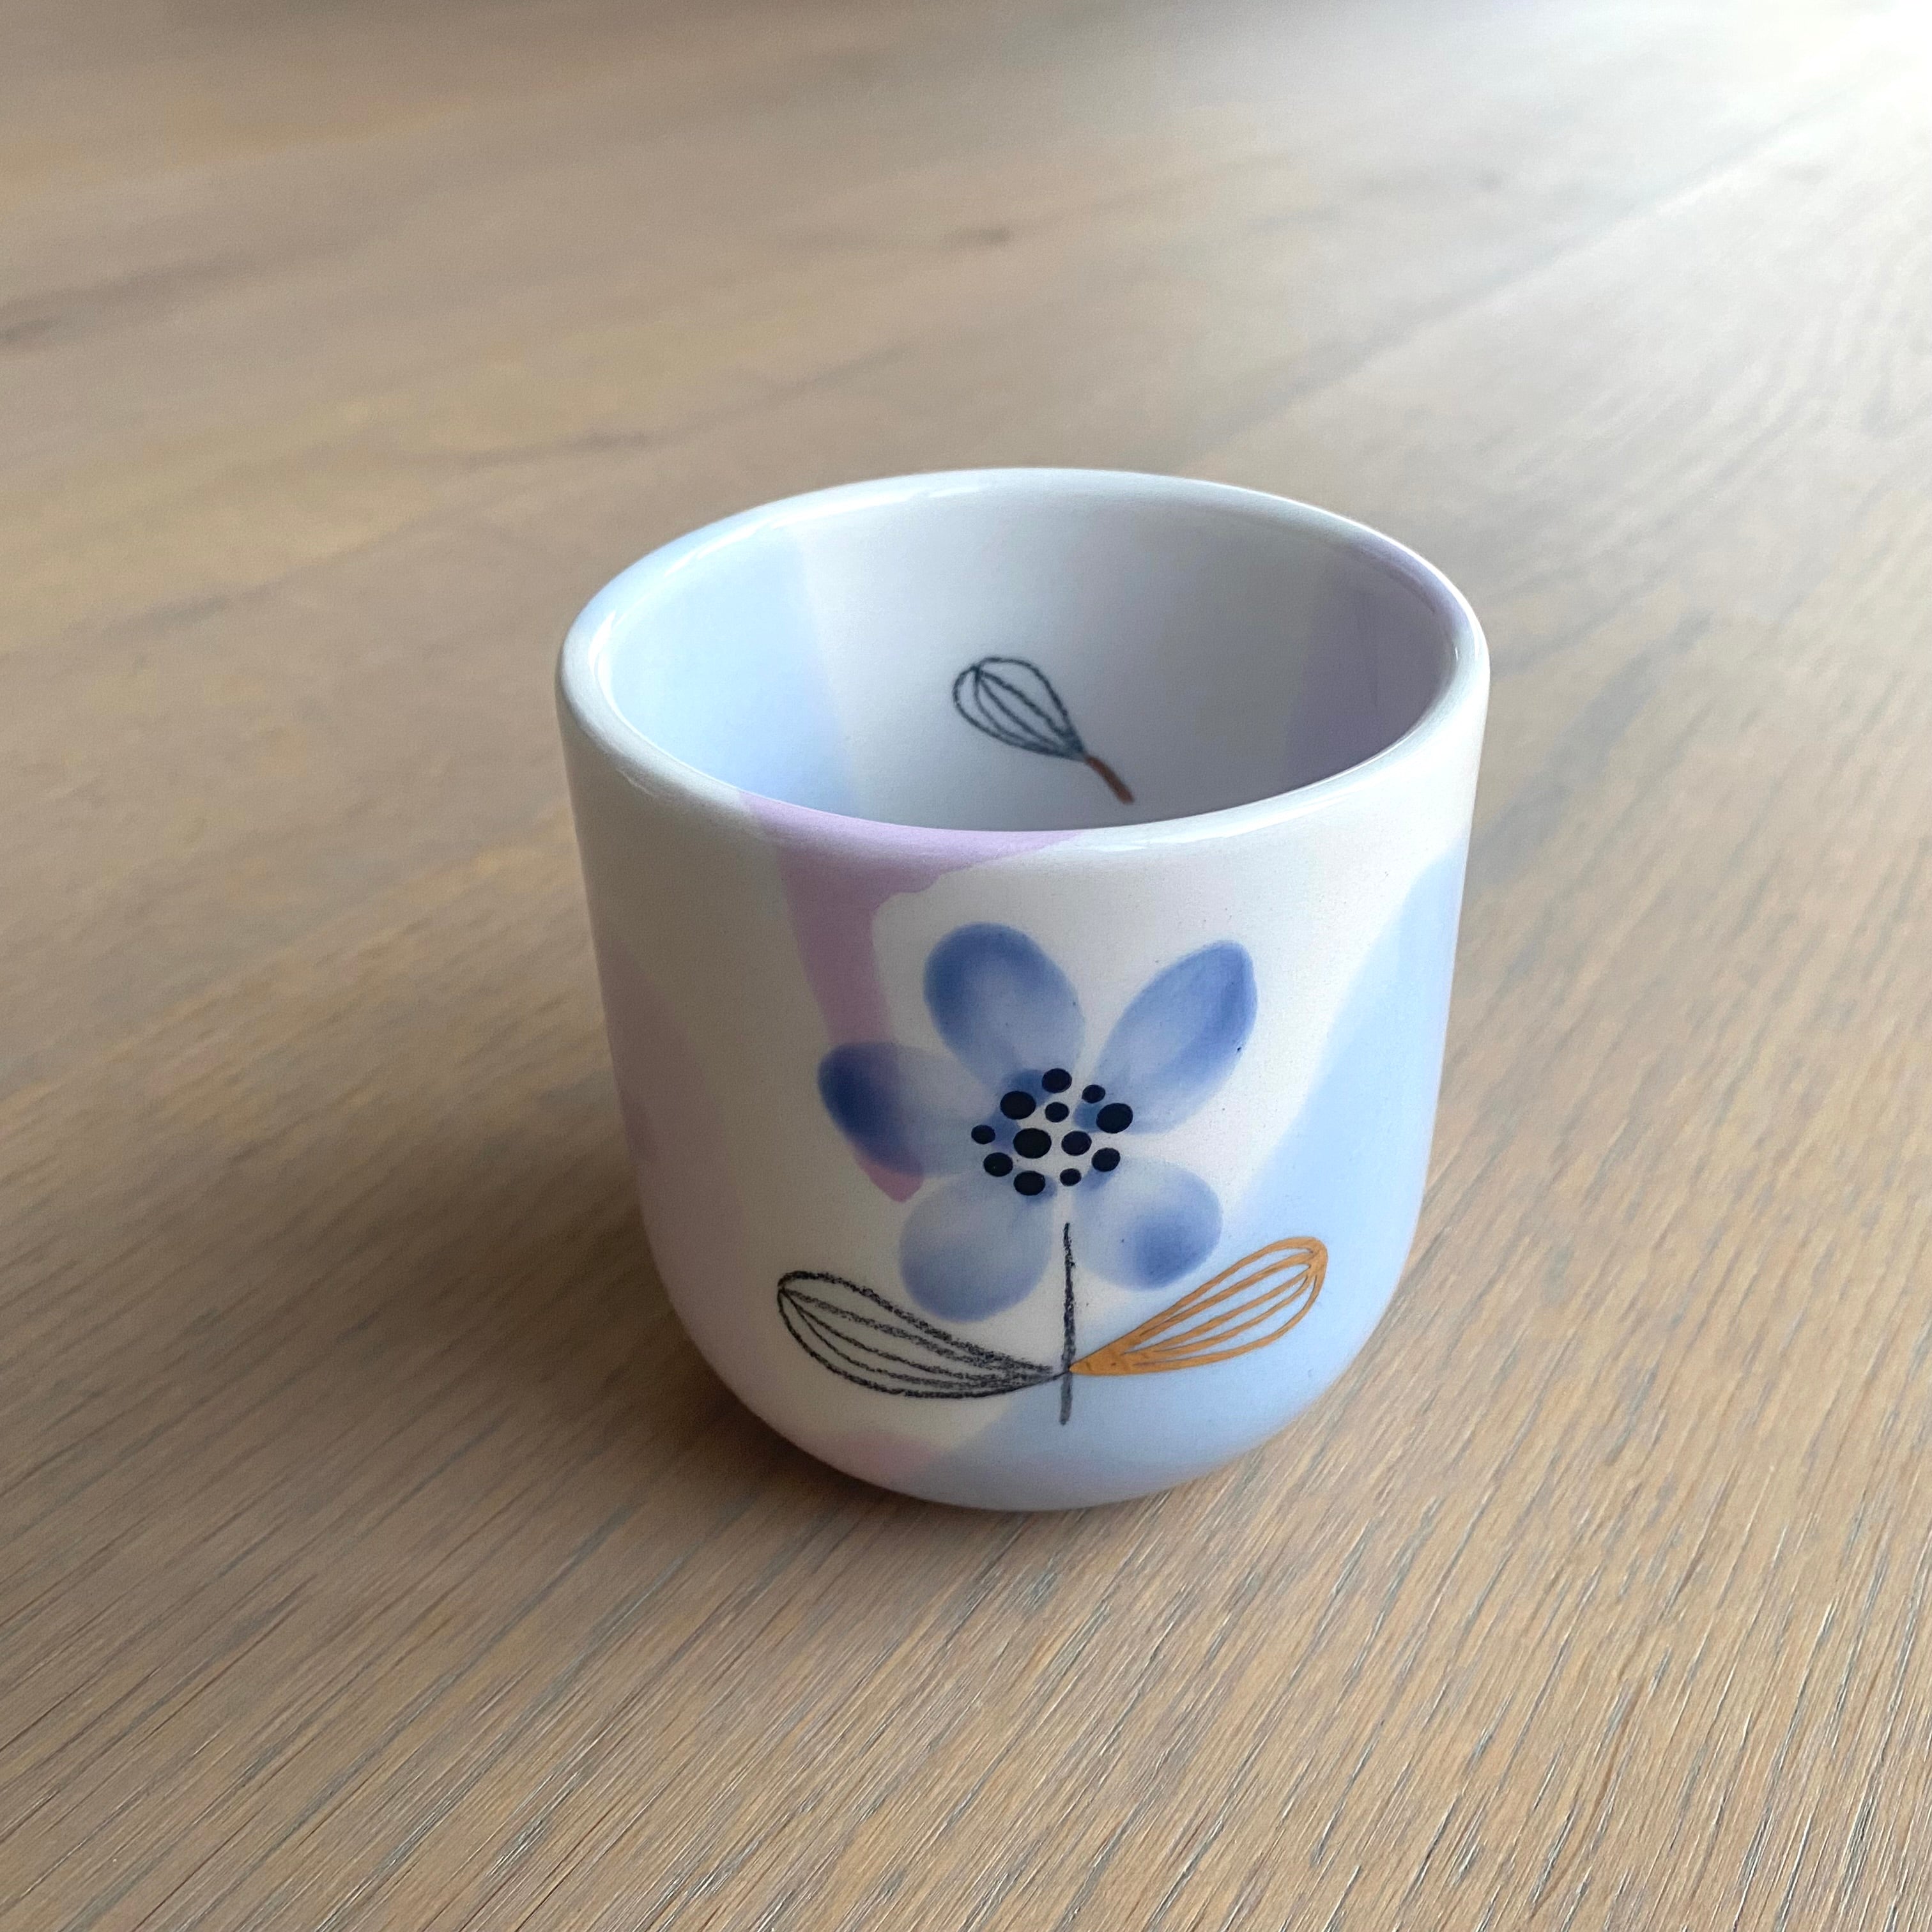 Marinski Heartmades latte kop daydream - serenity, blue flower